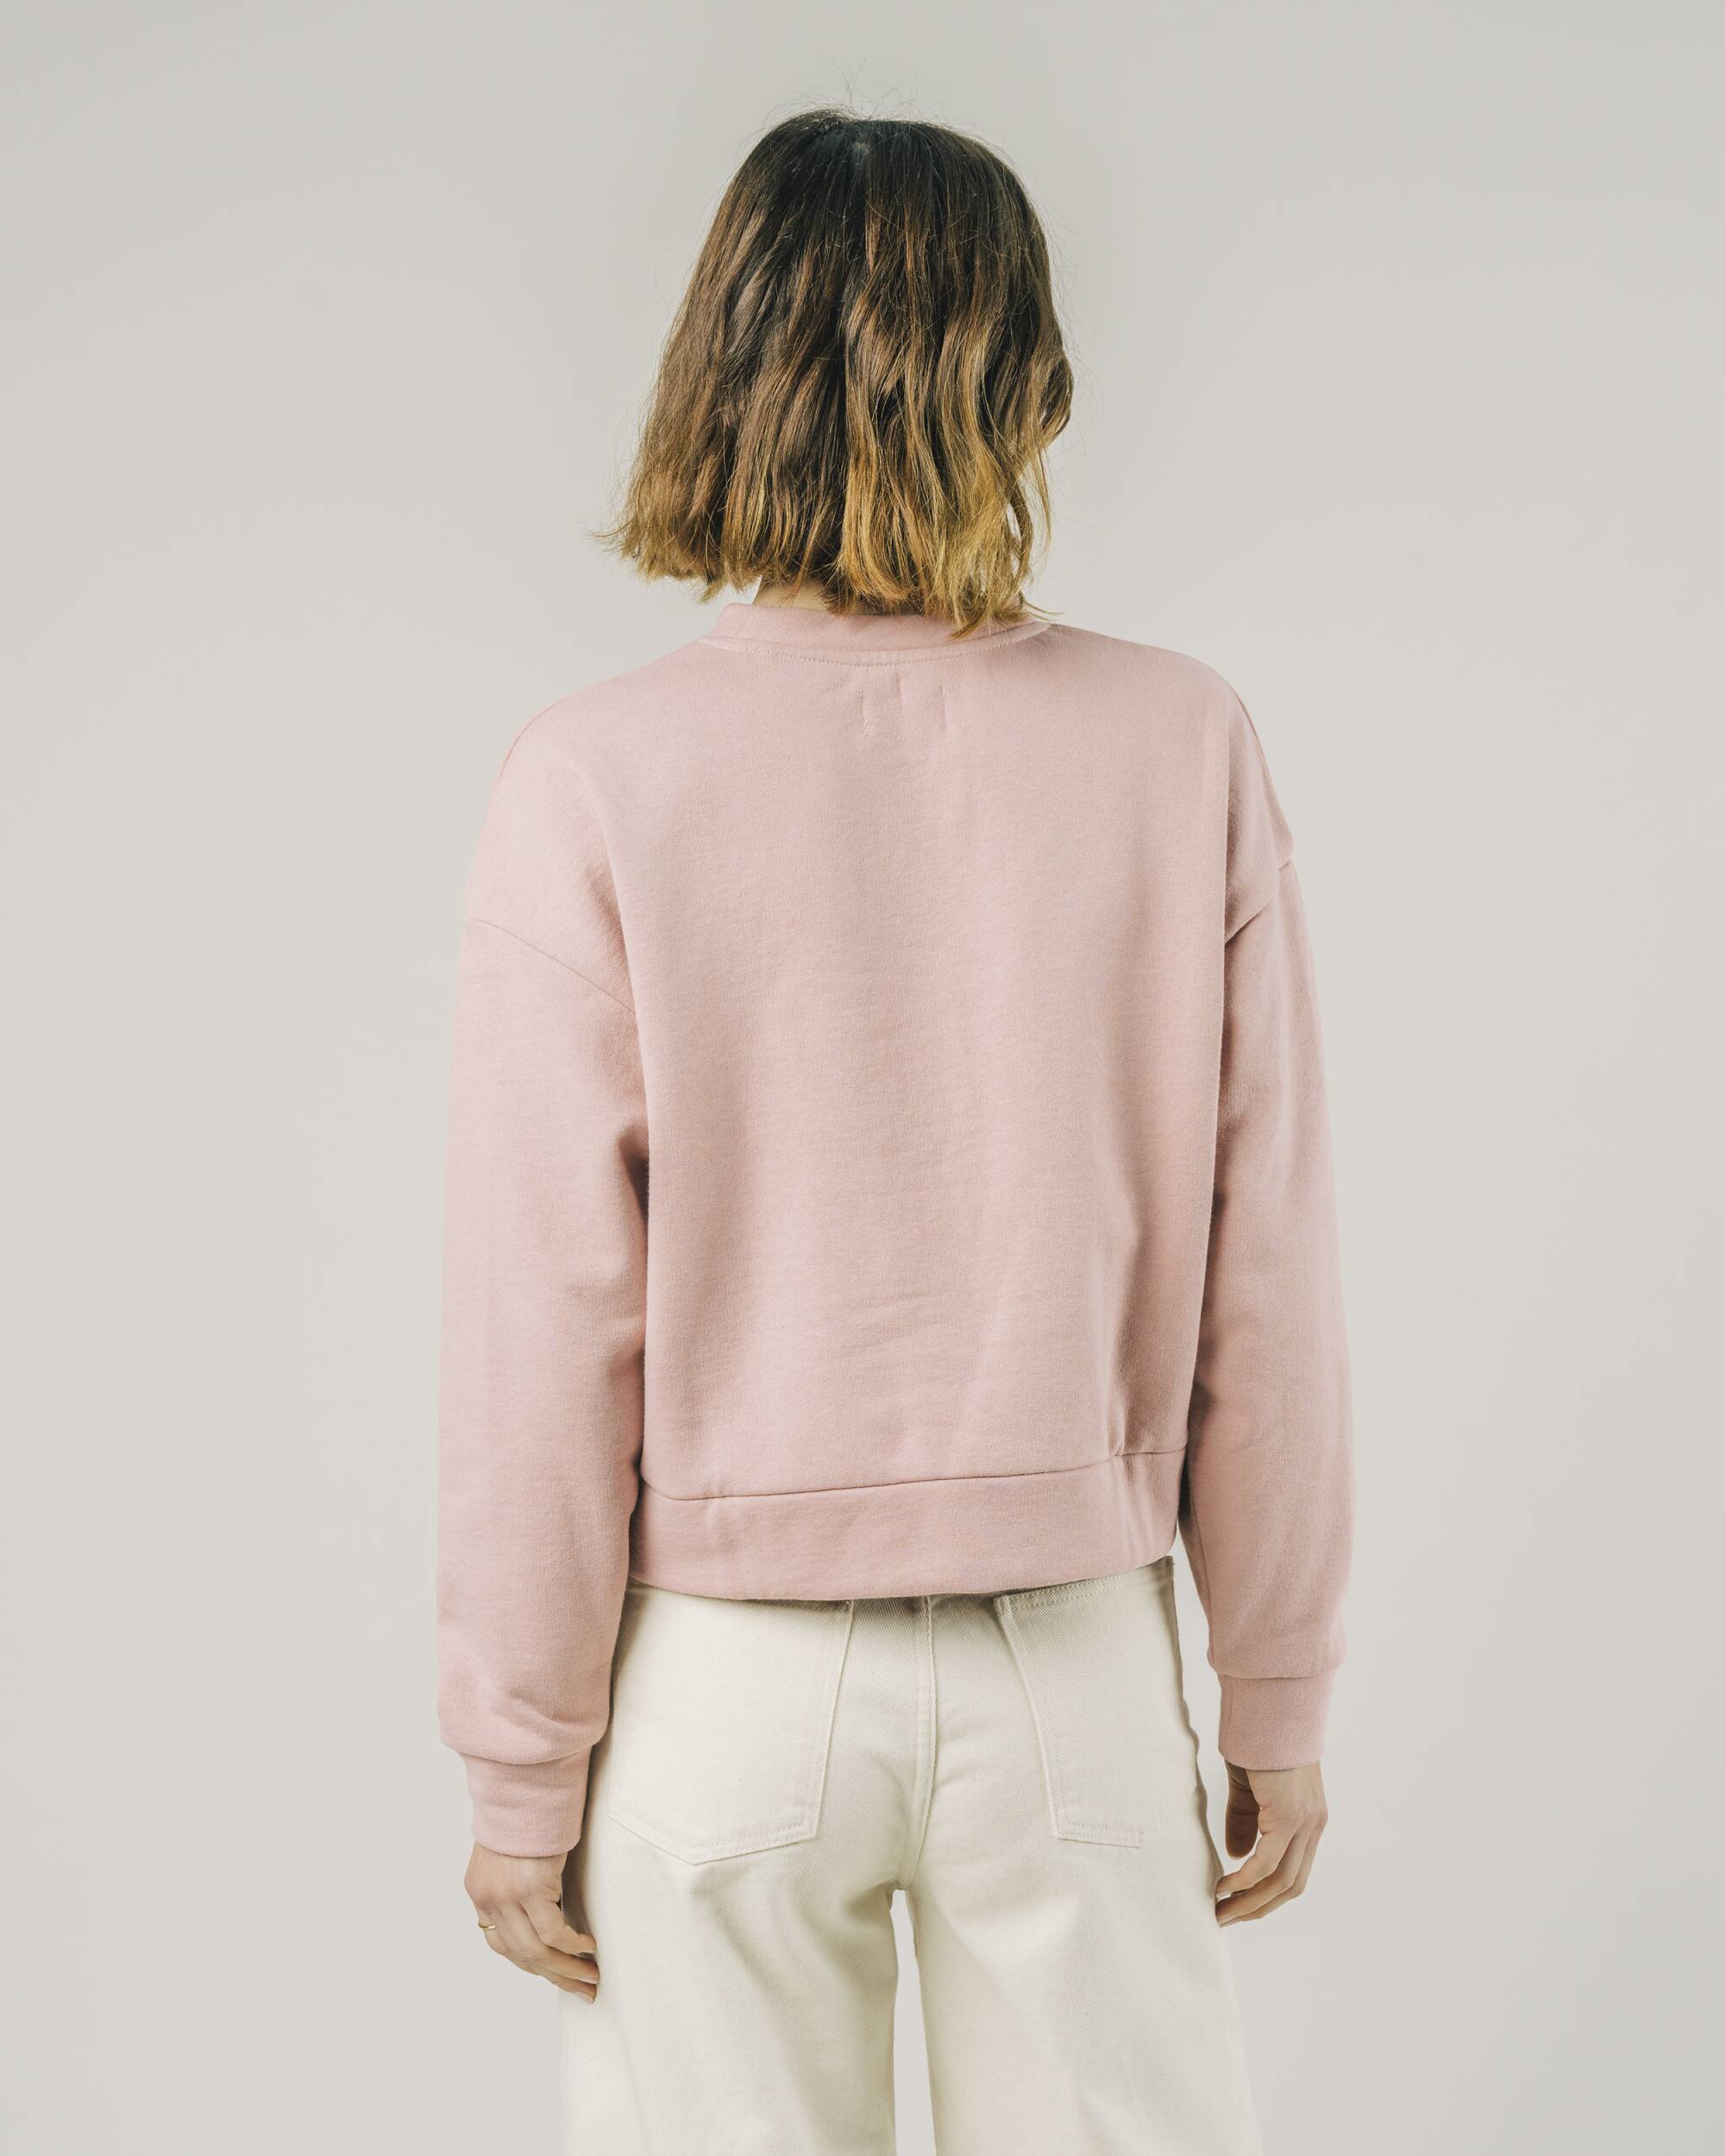 Rosa gekürzter Sweater aus Bio-Baumwolle von Brava Fabrics